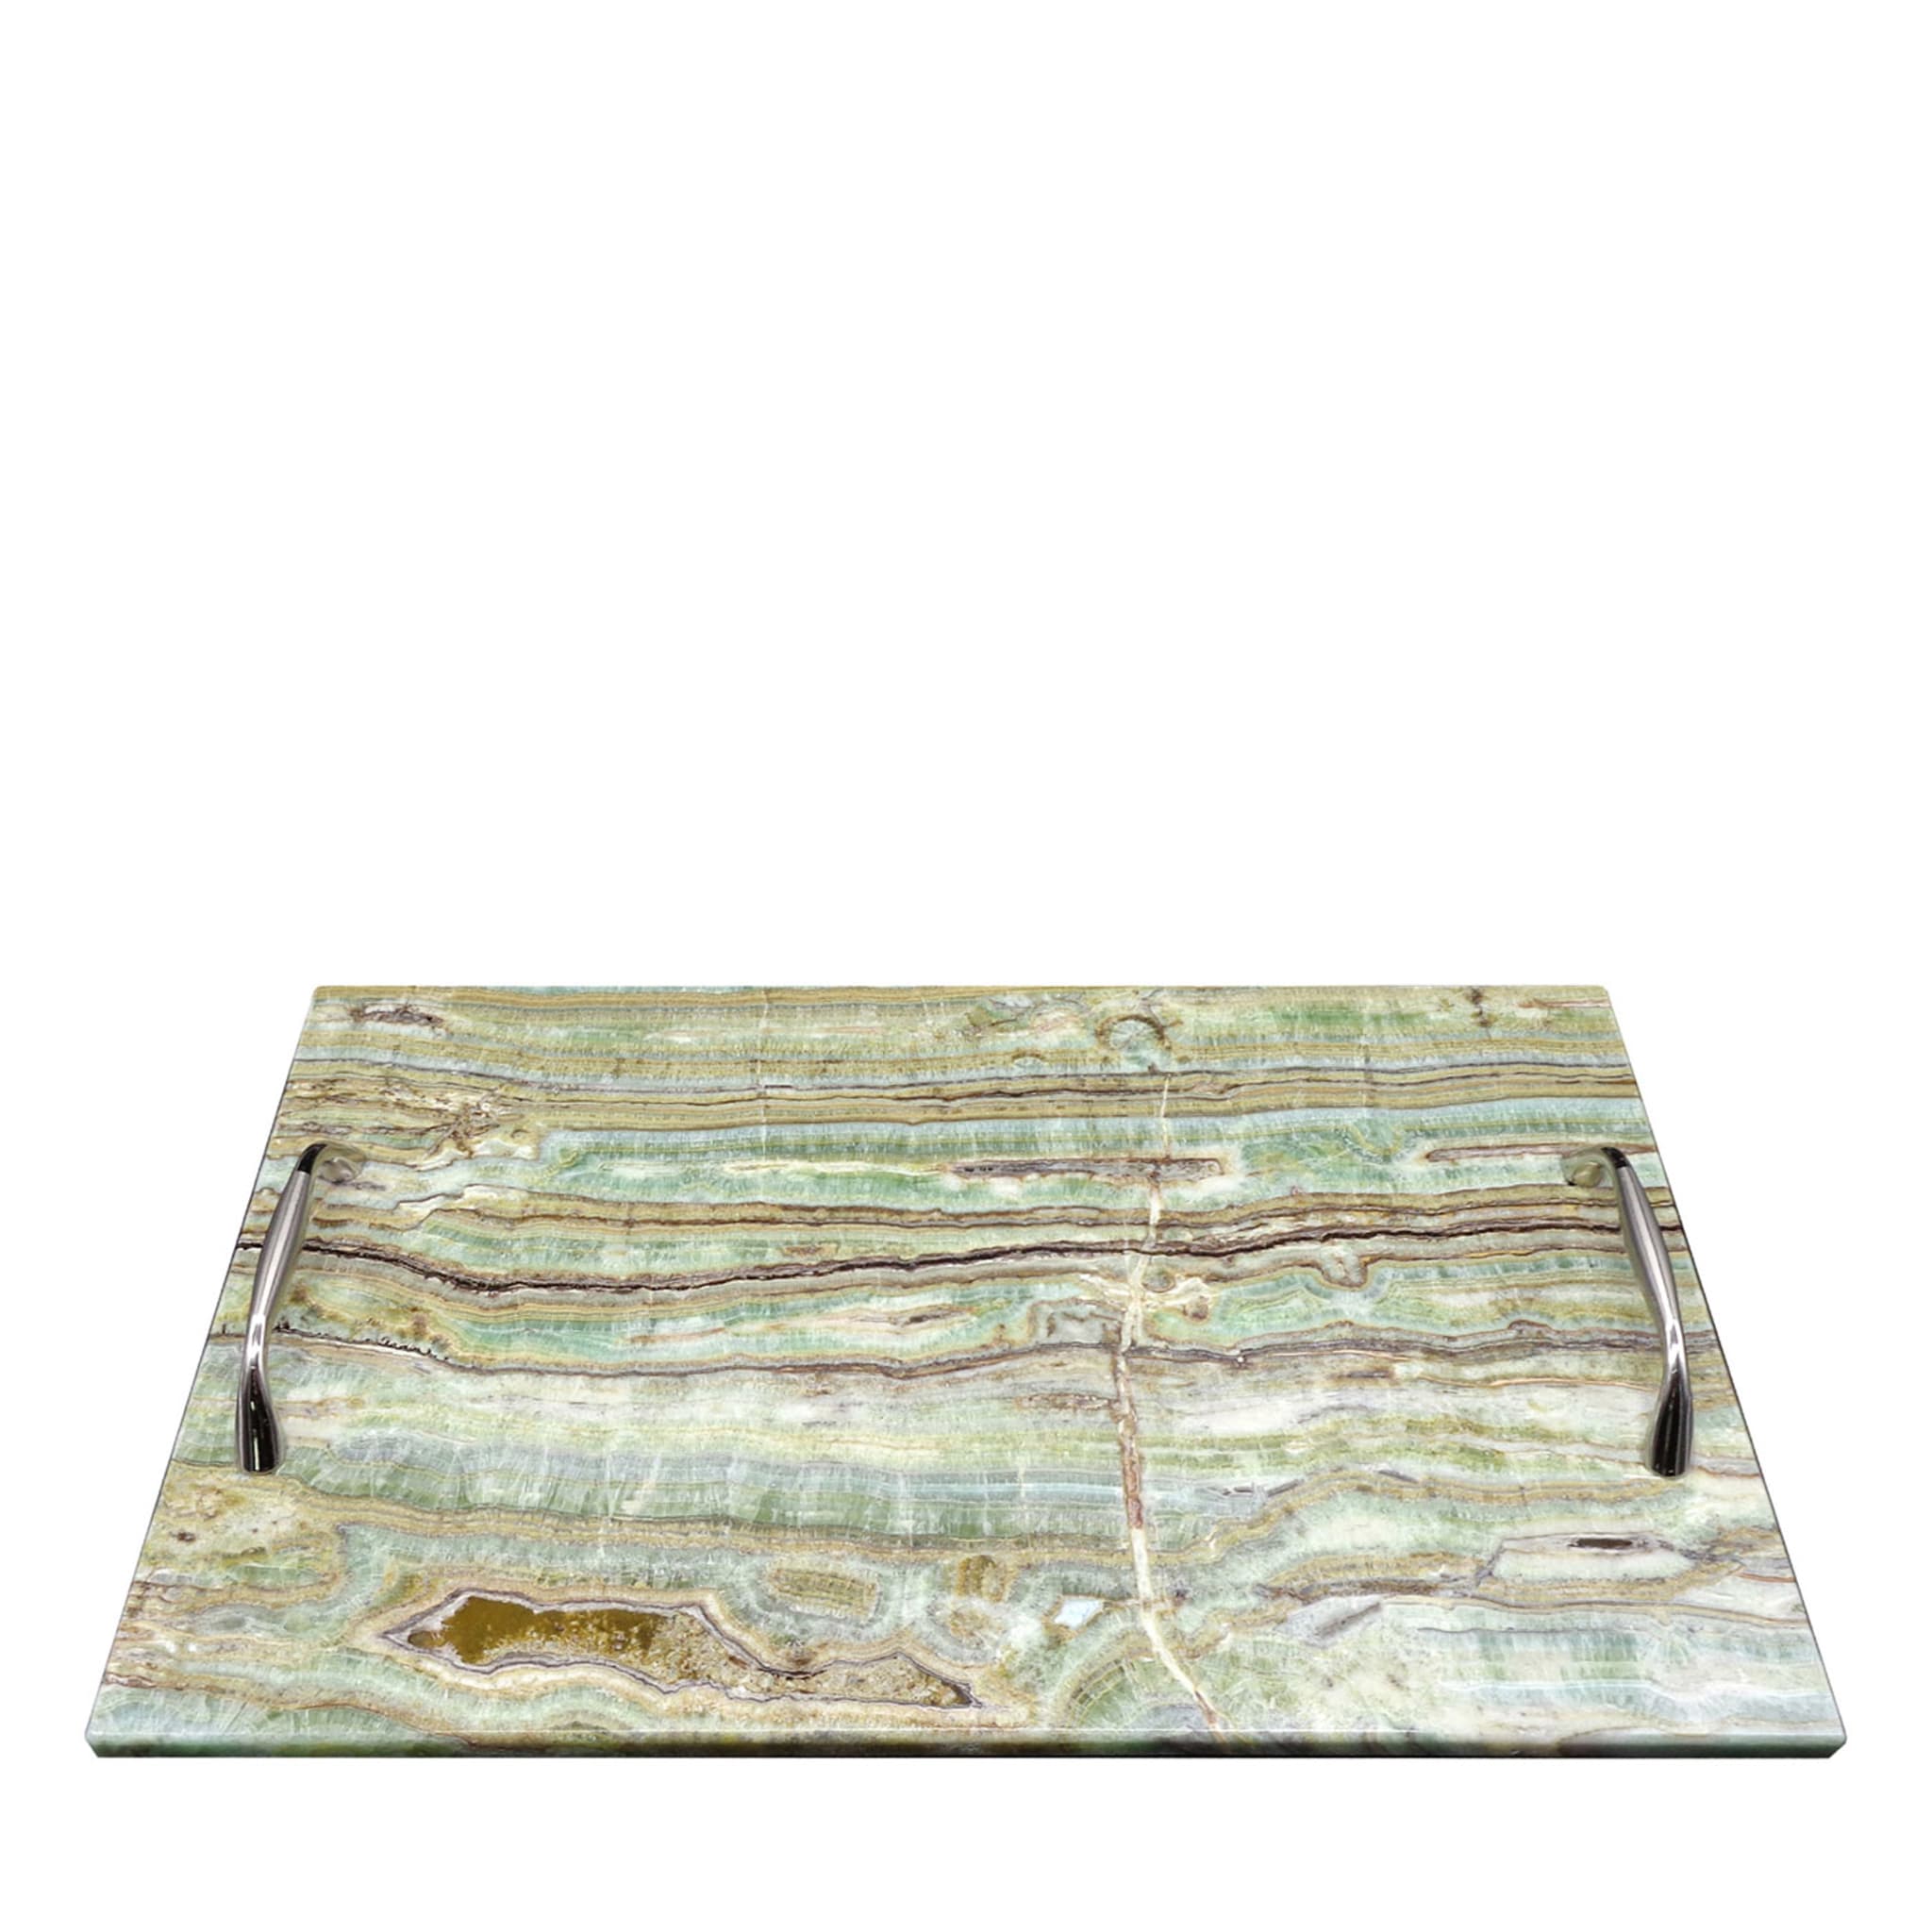 Bandeja rectangular de ónice esmeralda con asas de acero #3 - Vista principal